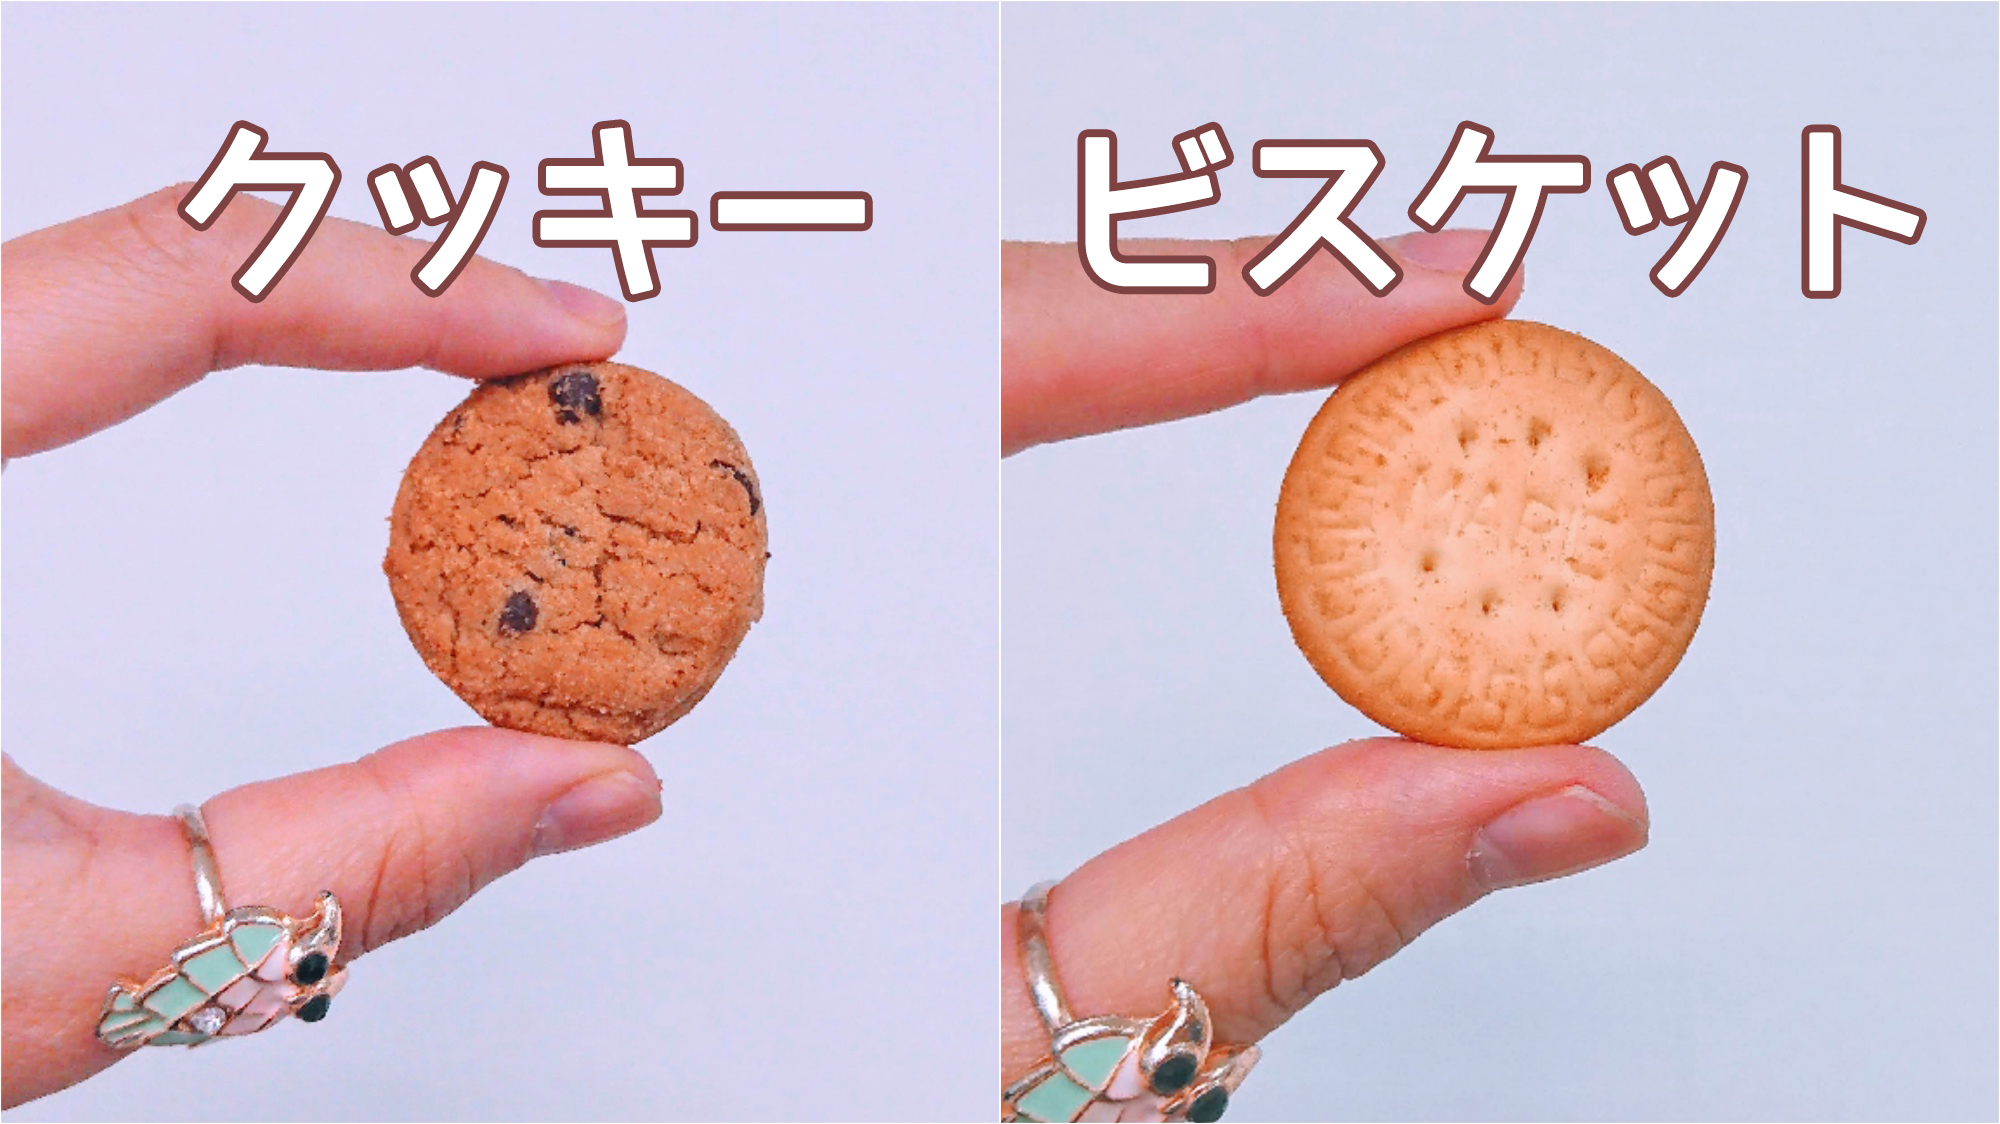 素朴な疑問 クッキーとビスケットの違いって何 調べてみたら日本と海外で違う食べ物になることも Pouch ポーチ